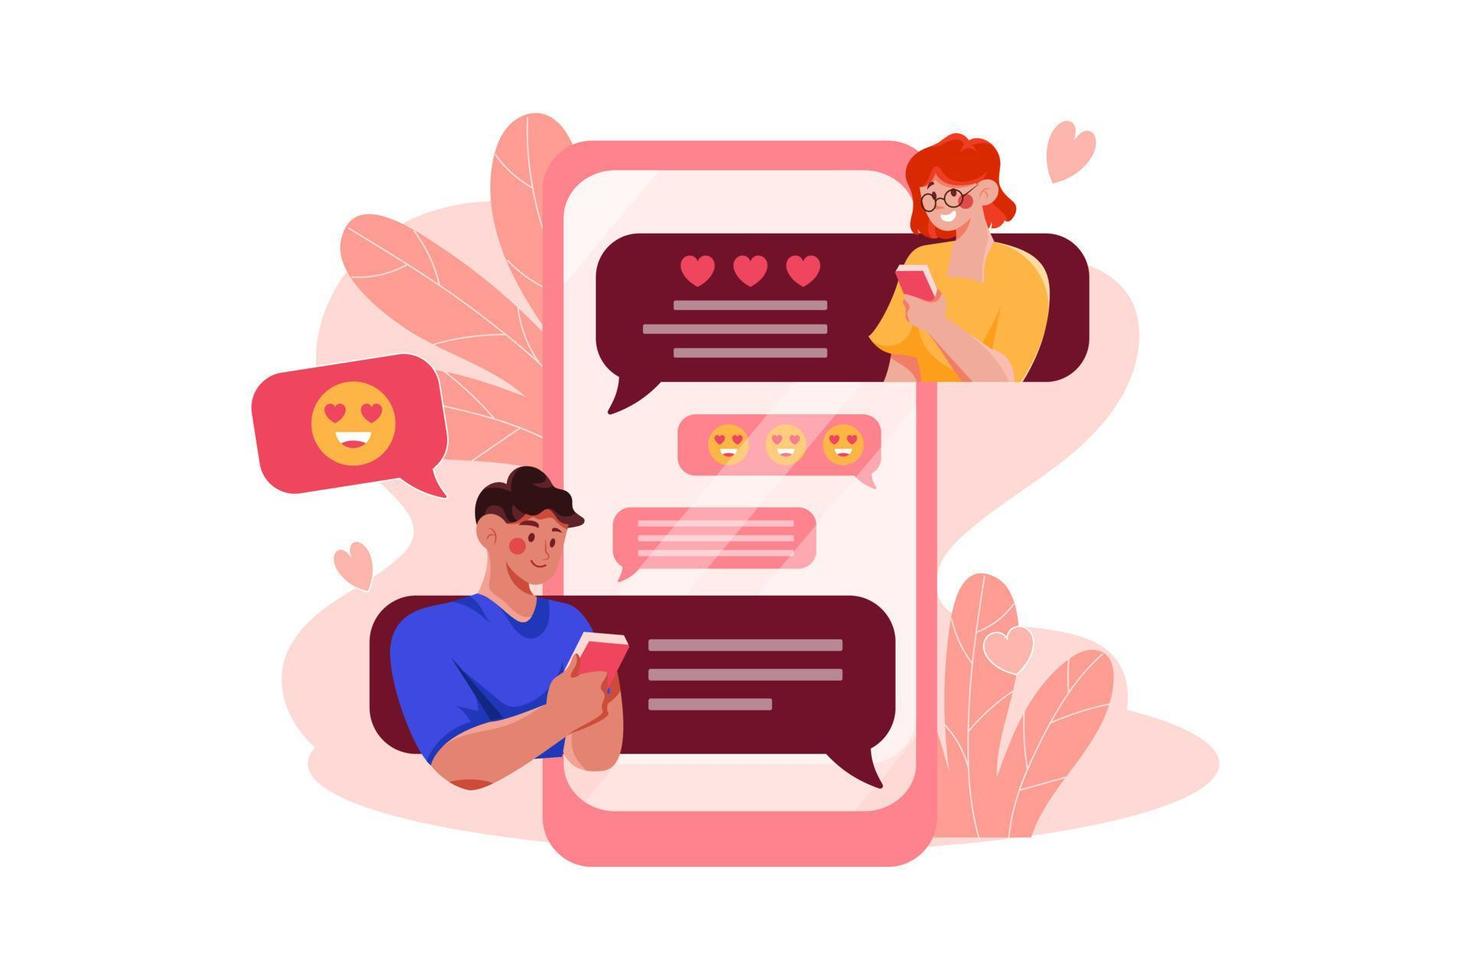 . koppel doet gesprek op dating-app vector